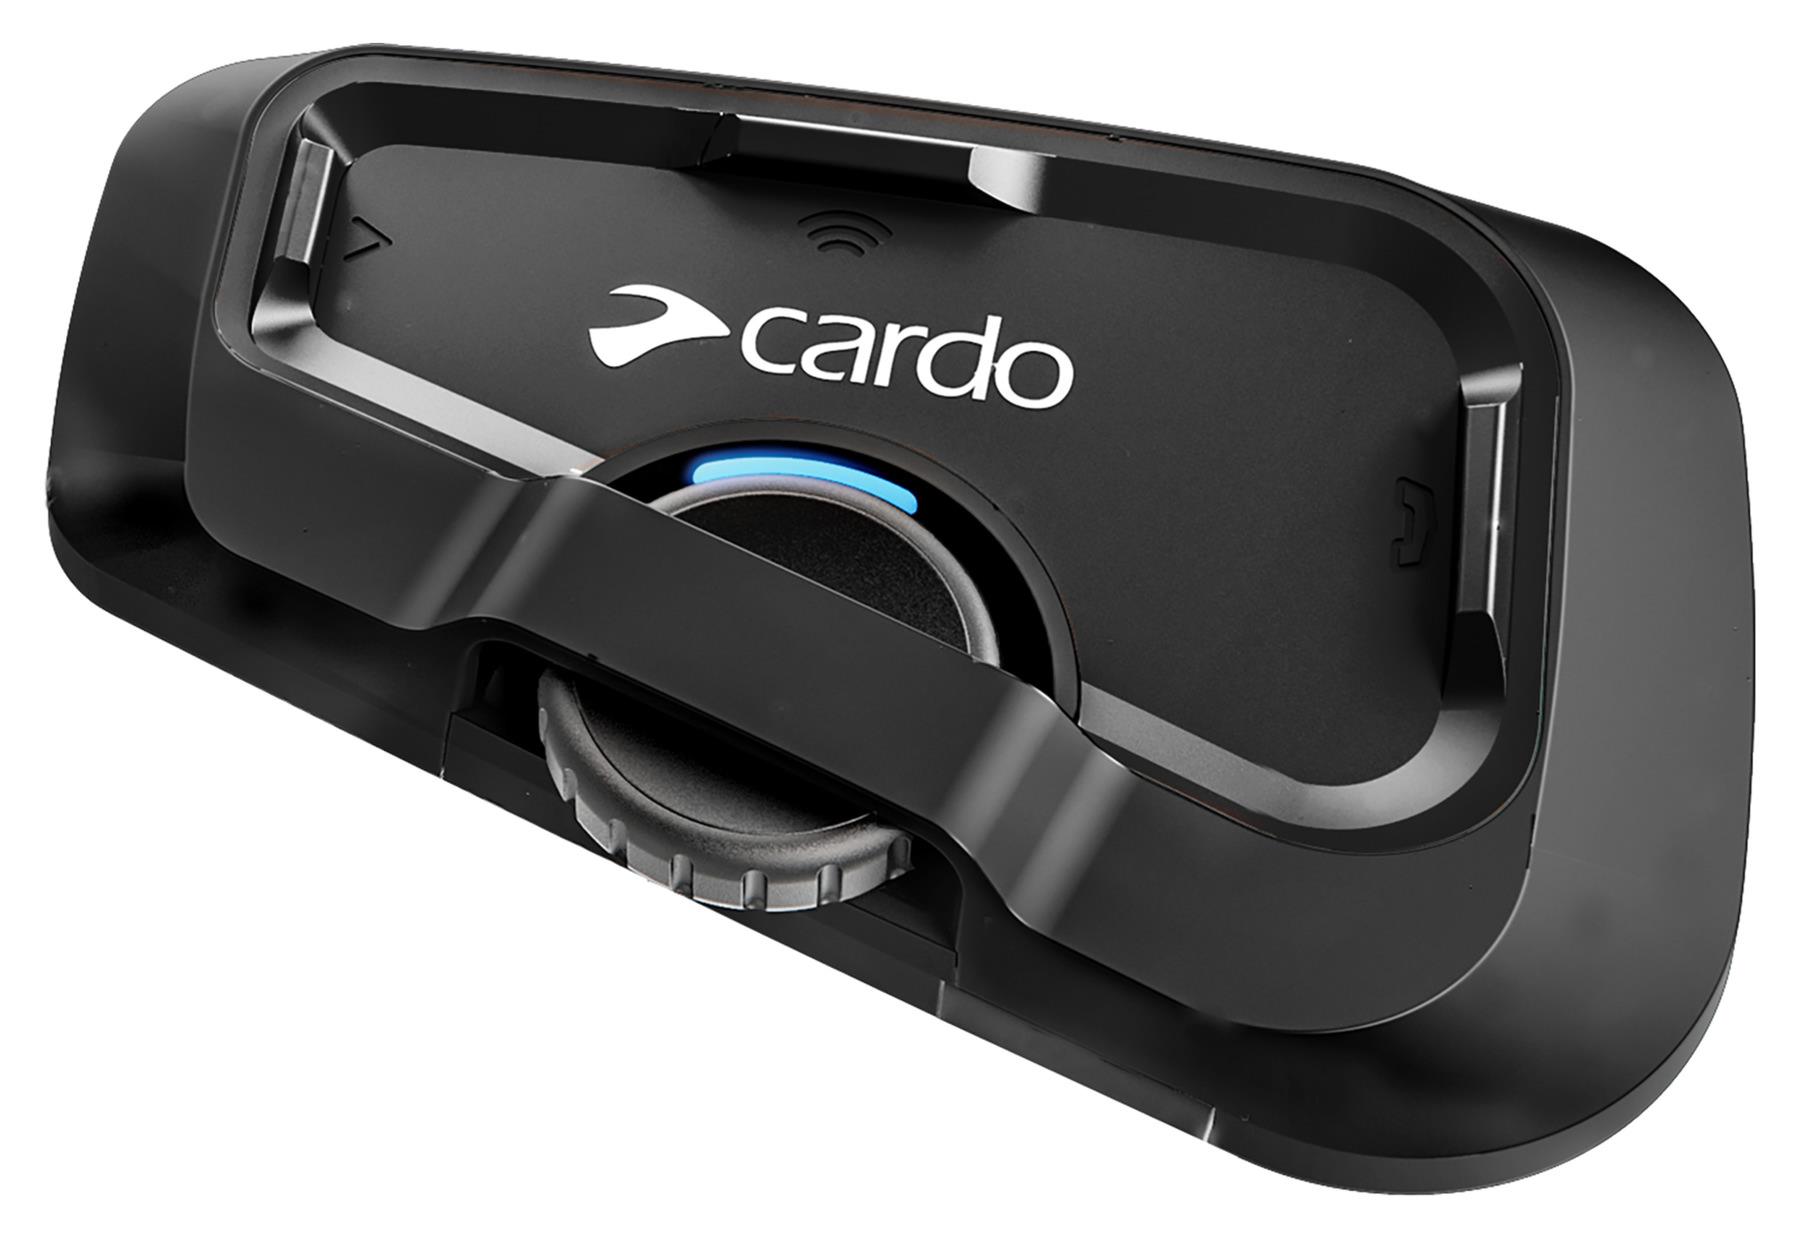 Cardo Freecom 2x Moto handsfree süsteem